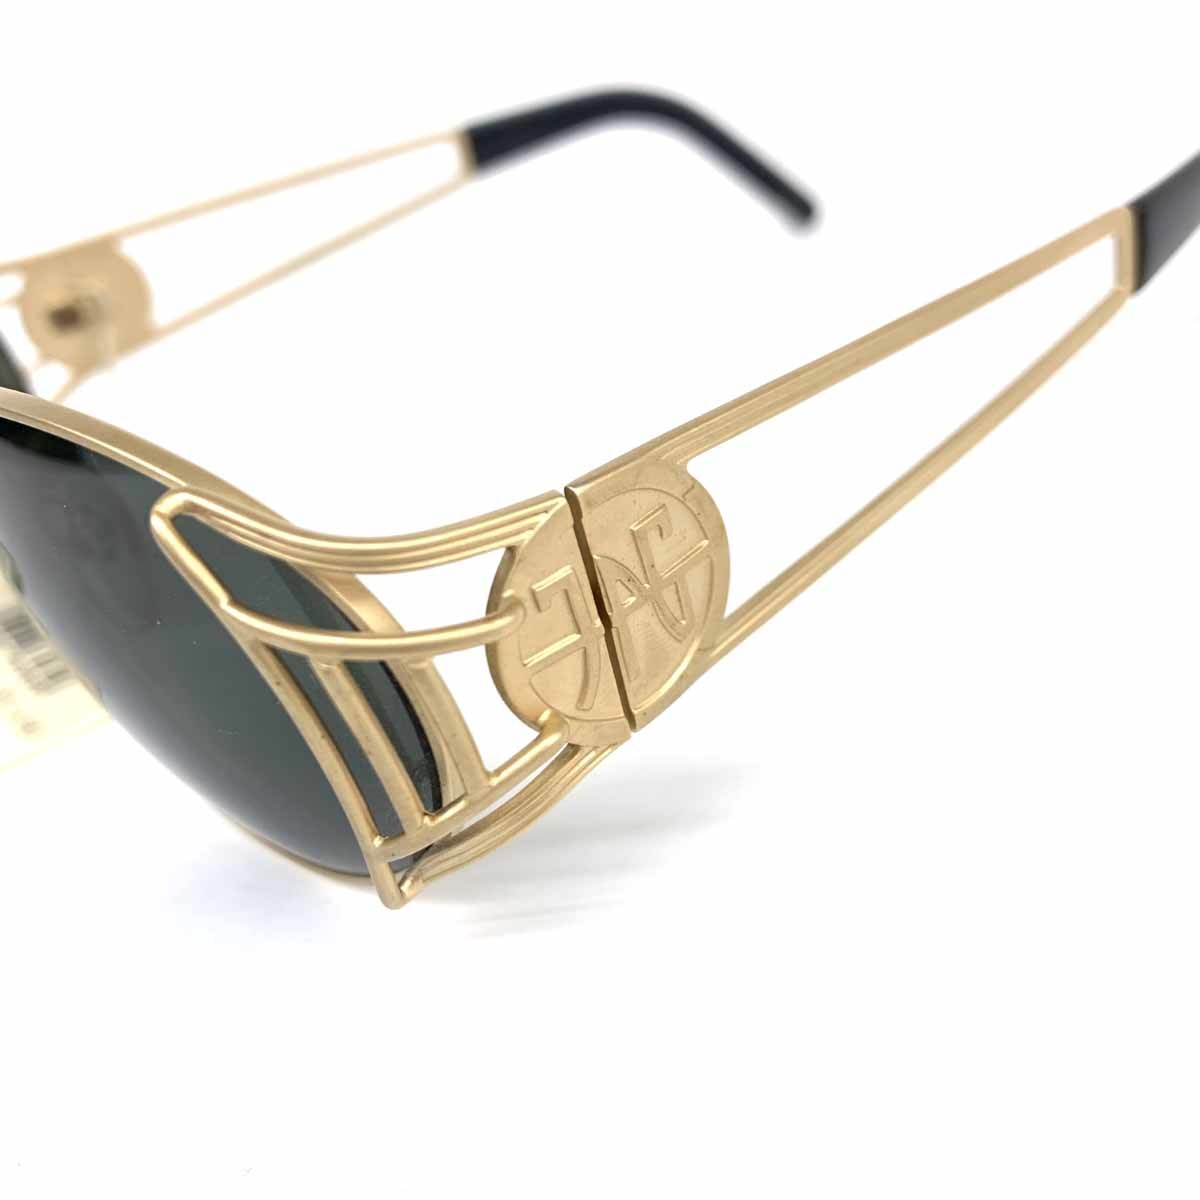  прекрасный товар *JEAN PAUL GAULTIER Jean-Paul Gaultier солнцезащитные очки *58-6102 Gold цвет унисекс Vintage неиспользуемый товар мелкие вещи 